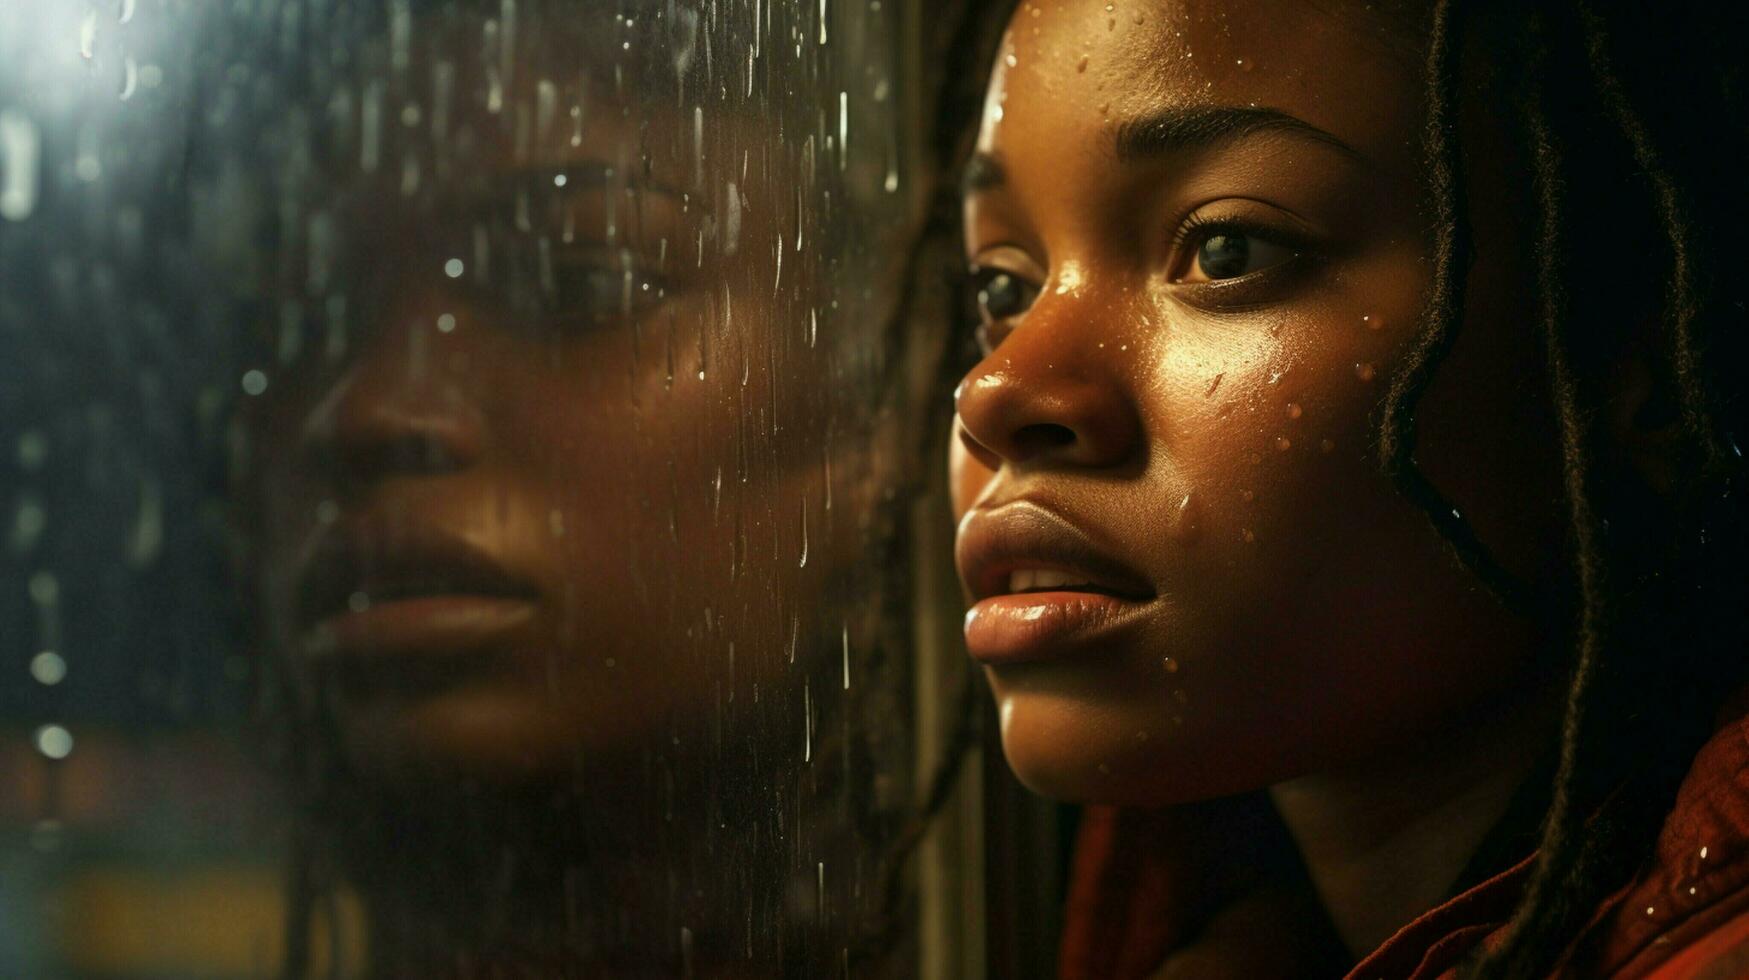 jung afrikanisch Frau suchen aus von ein Regen eingeweicht Fenster foto